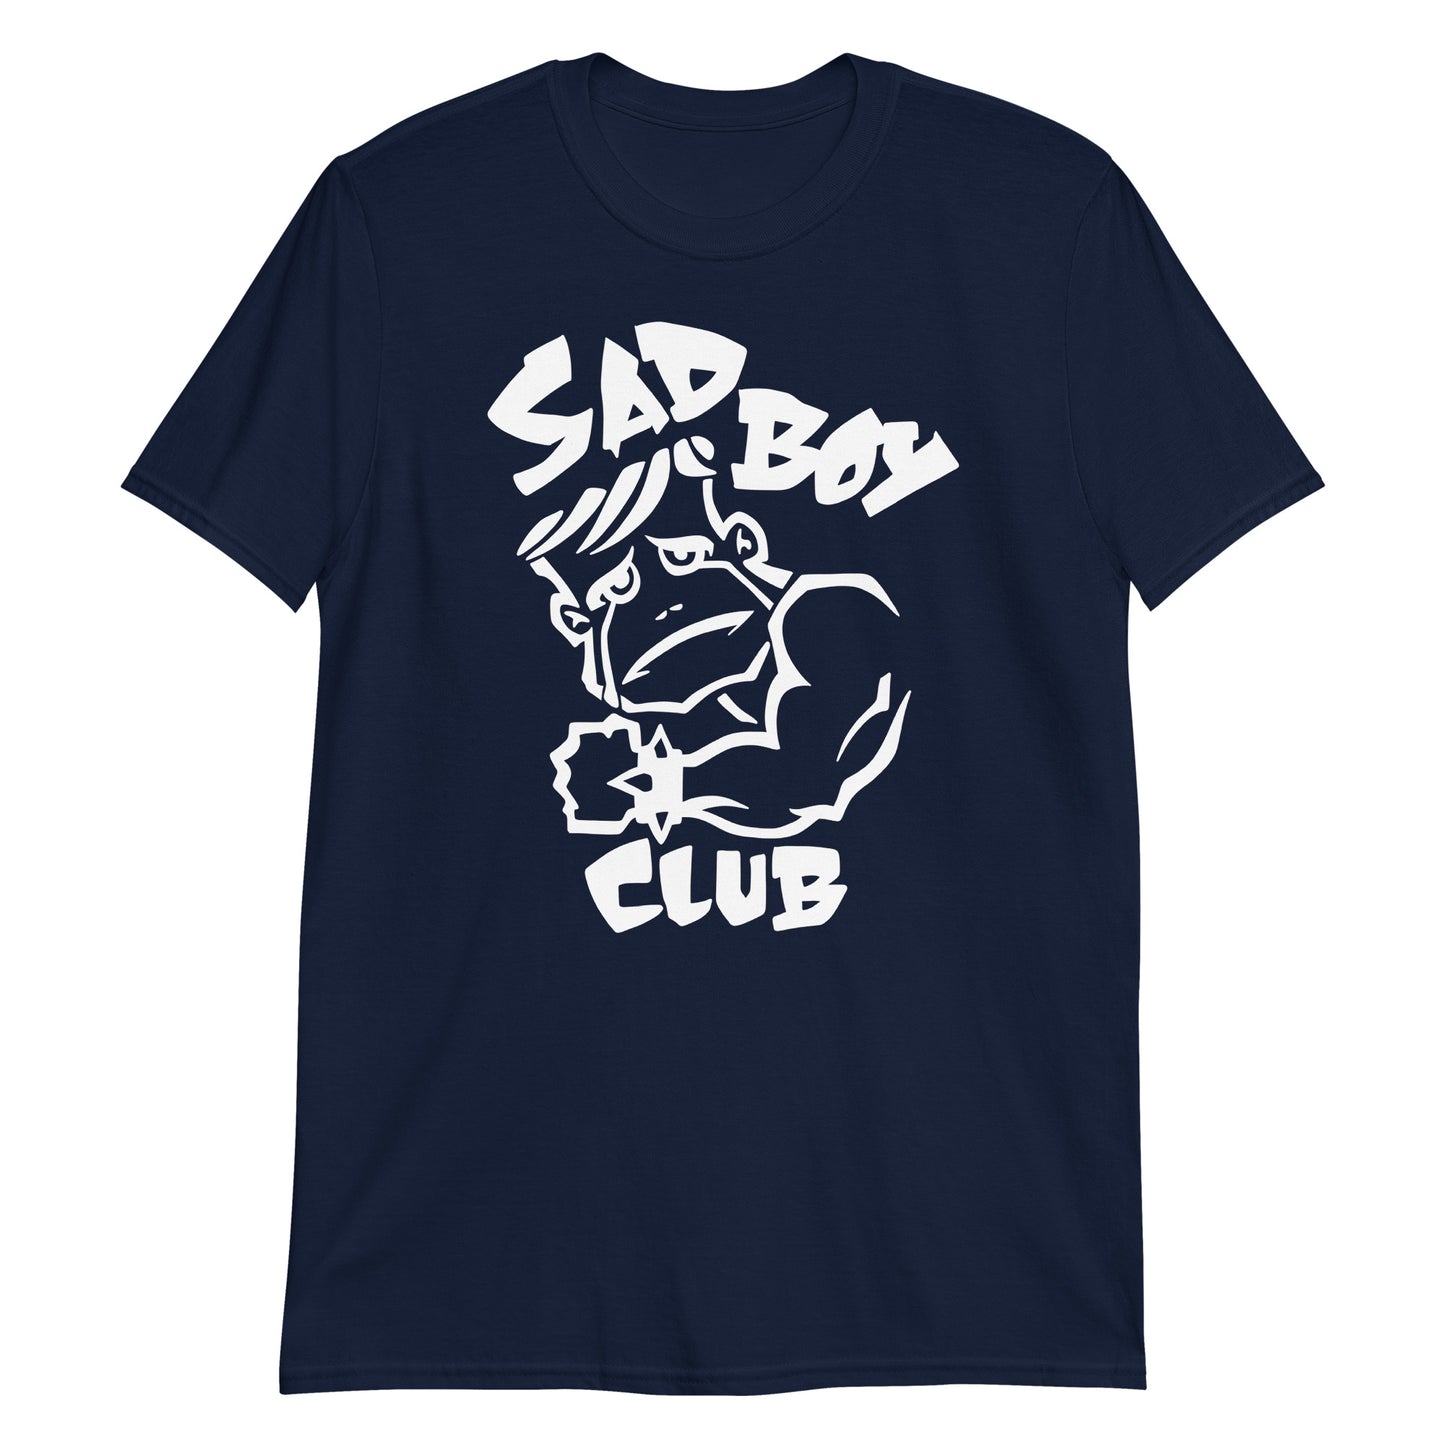 Sad Boy Club t-shirt